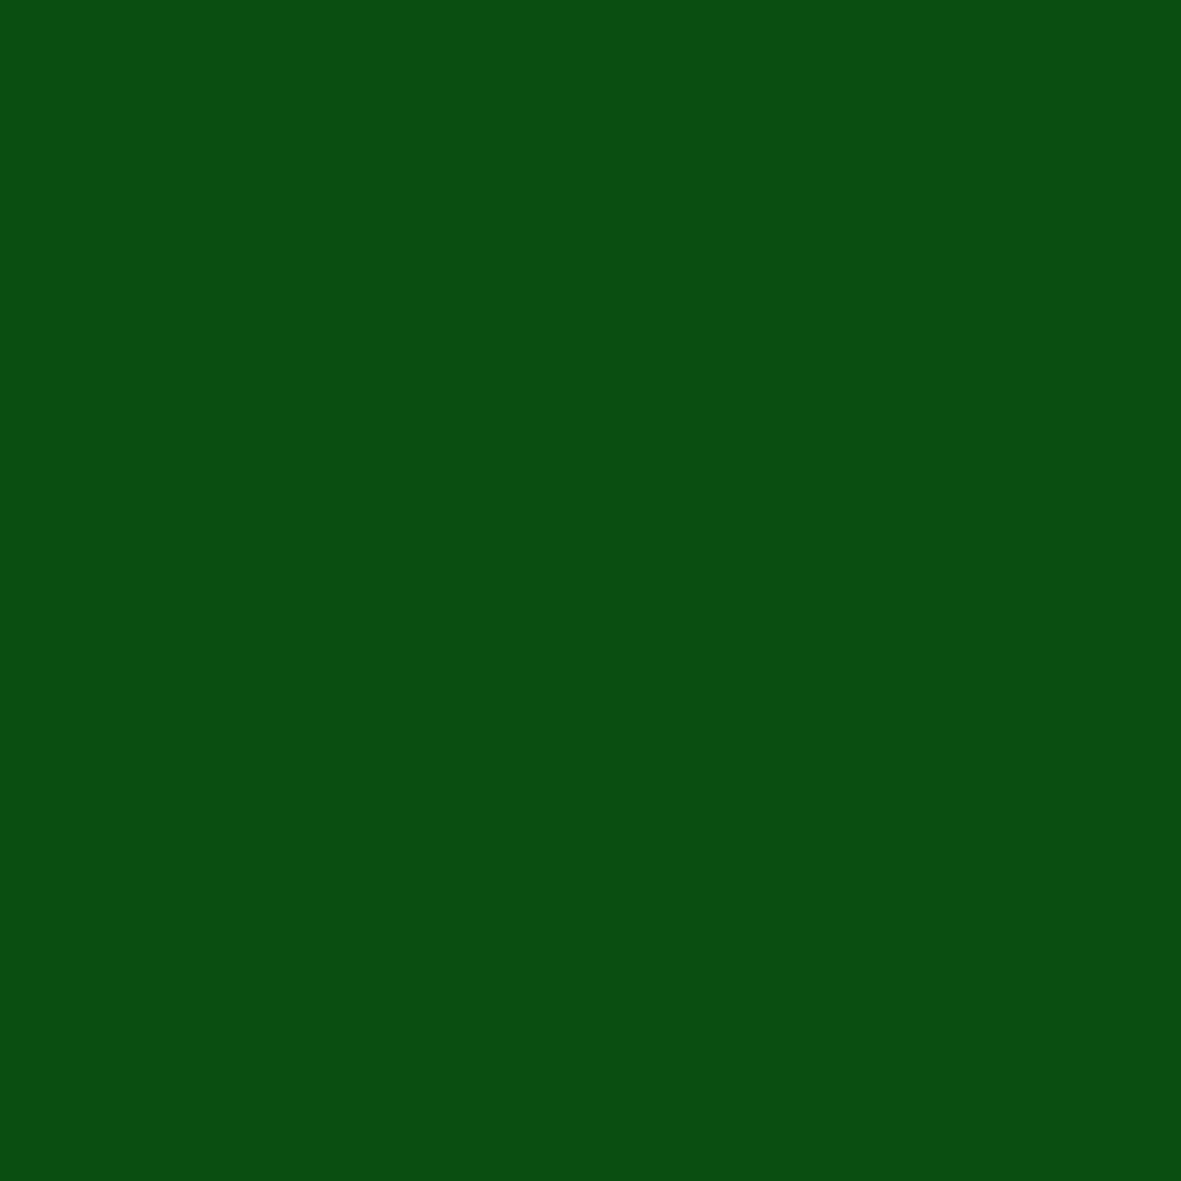 Gravotherm Folienfarbe Blattgrün für Texte, Logos und Muster 